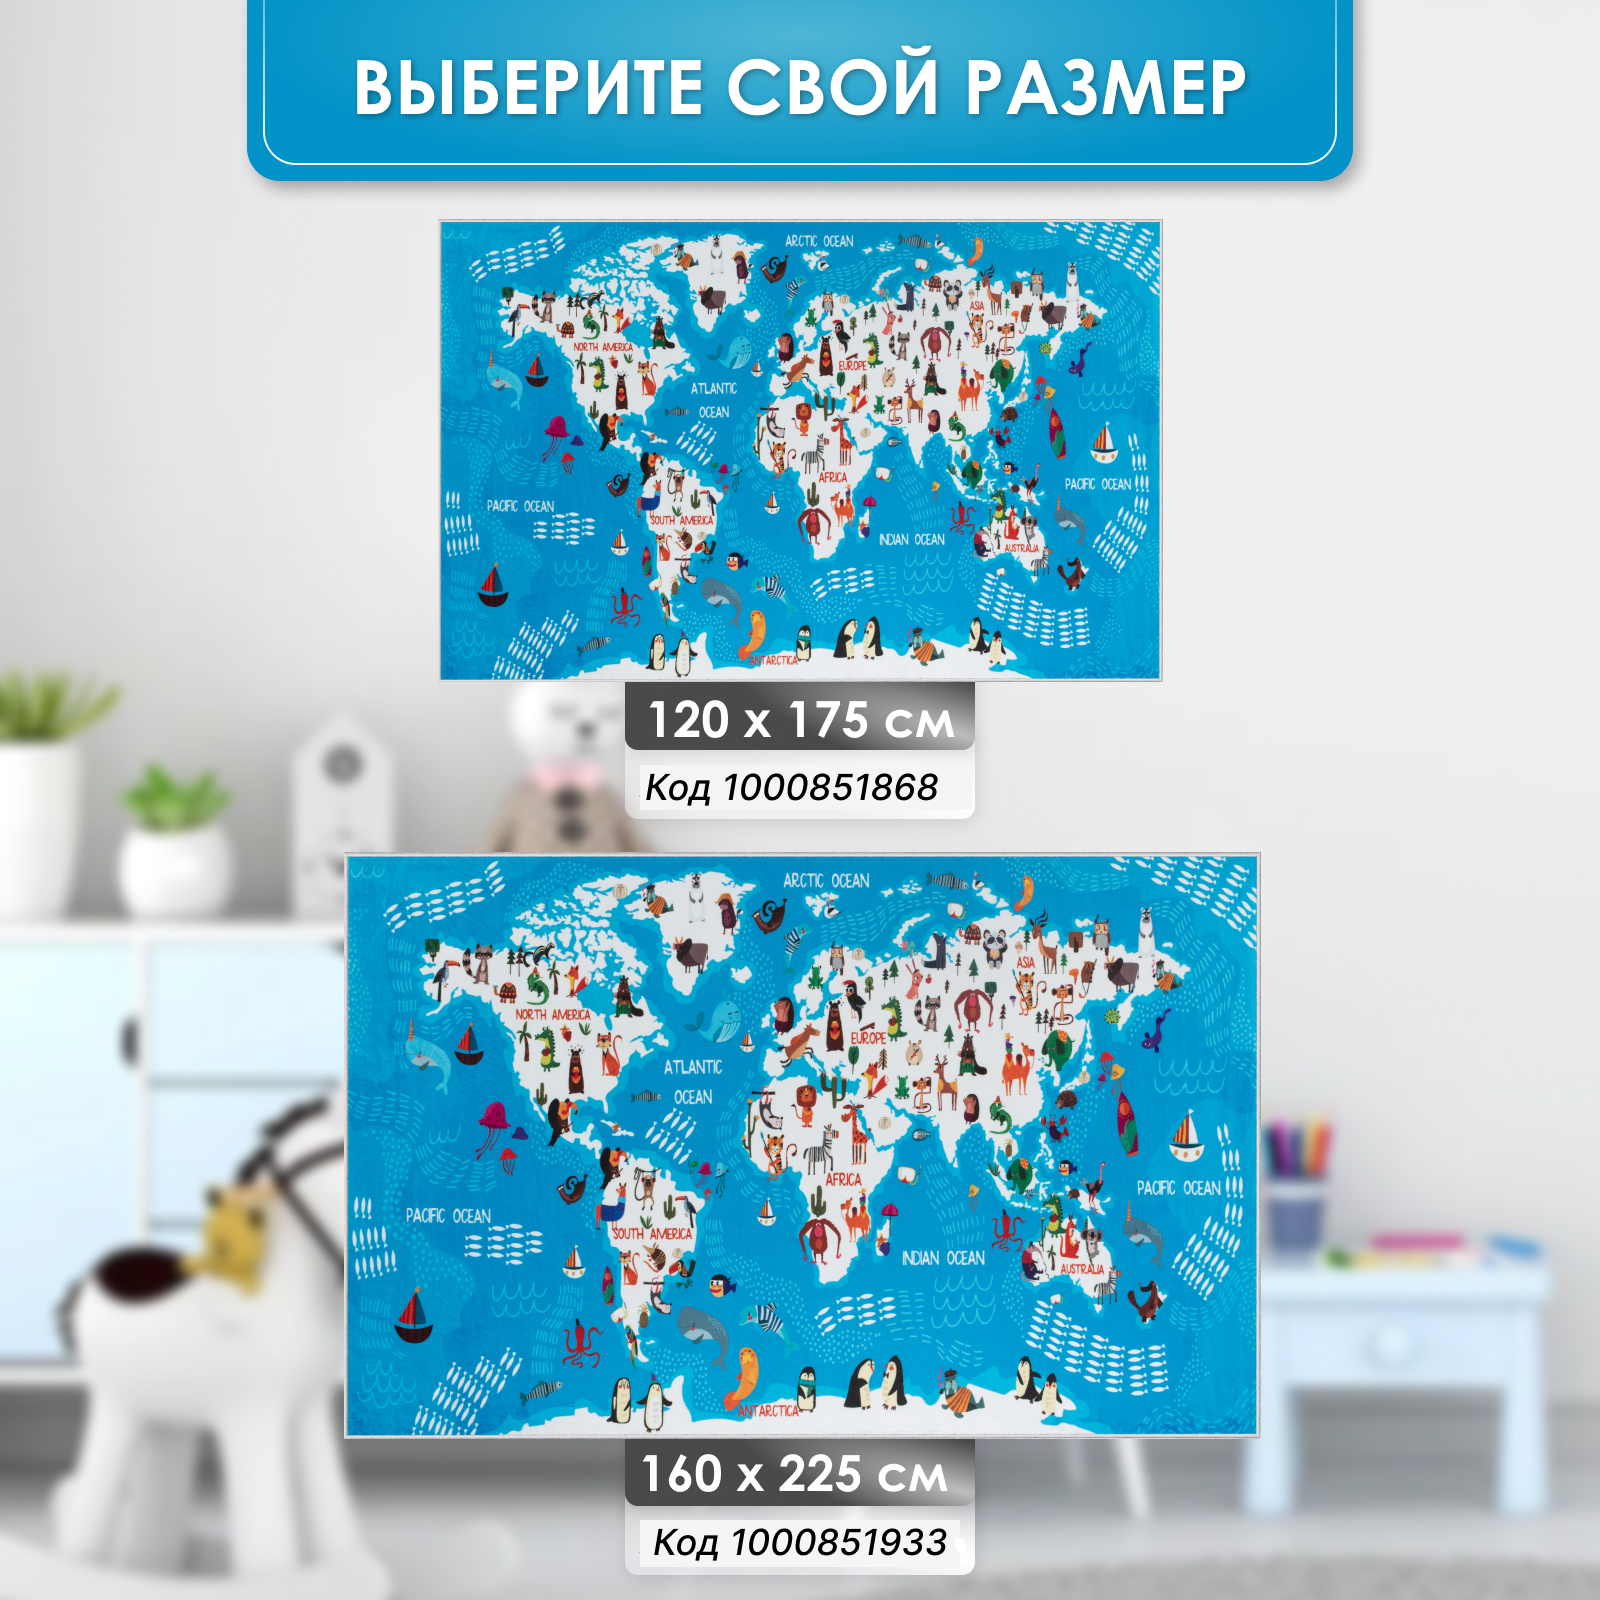 Ковер комнатный детский KOVRIKANA карта мира развивающий голубой океан 160см на 225см - фото 7